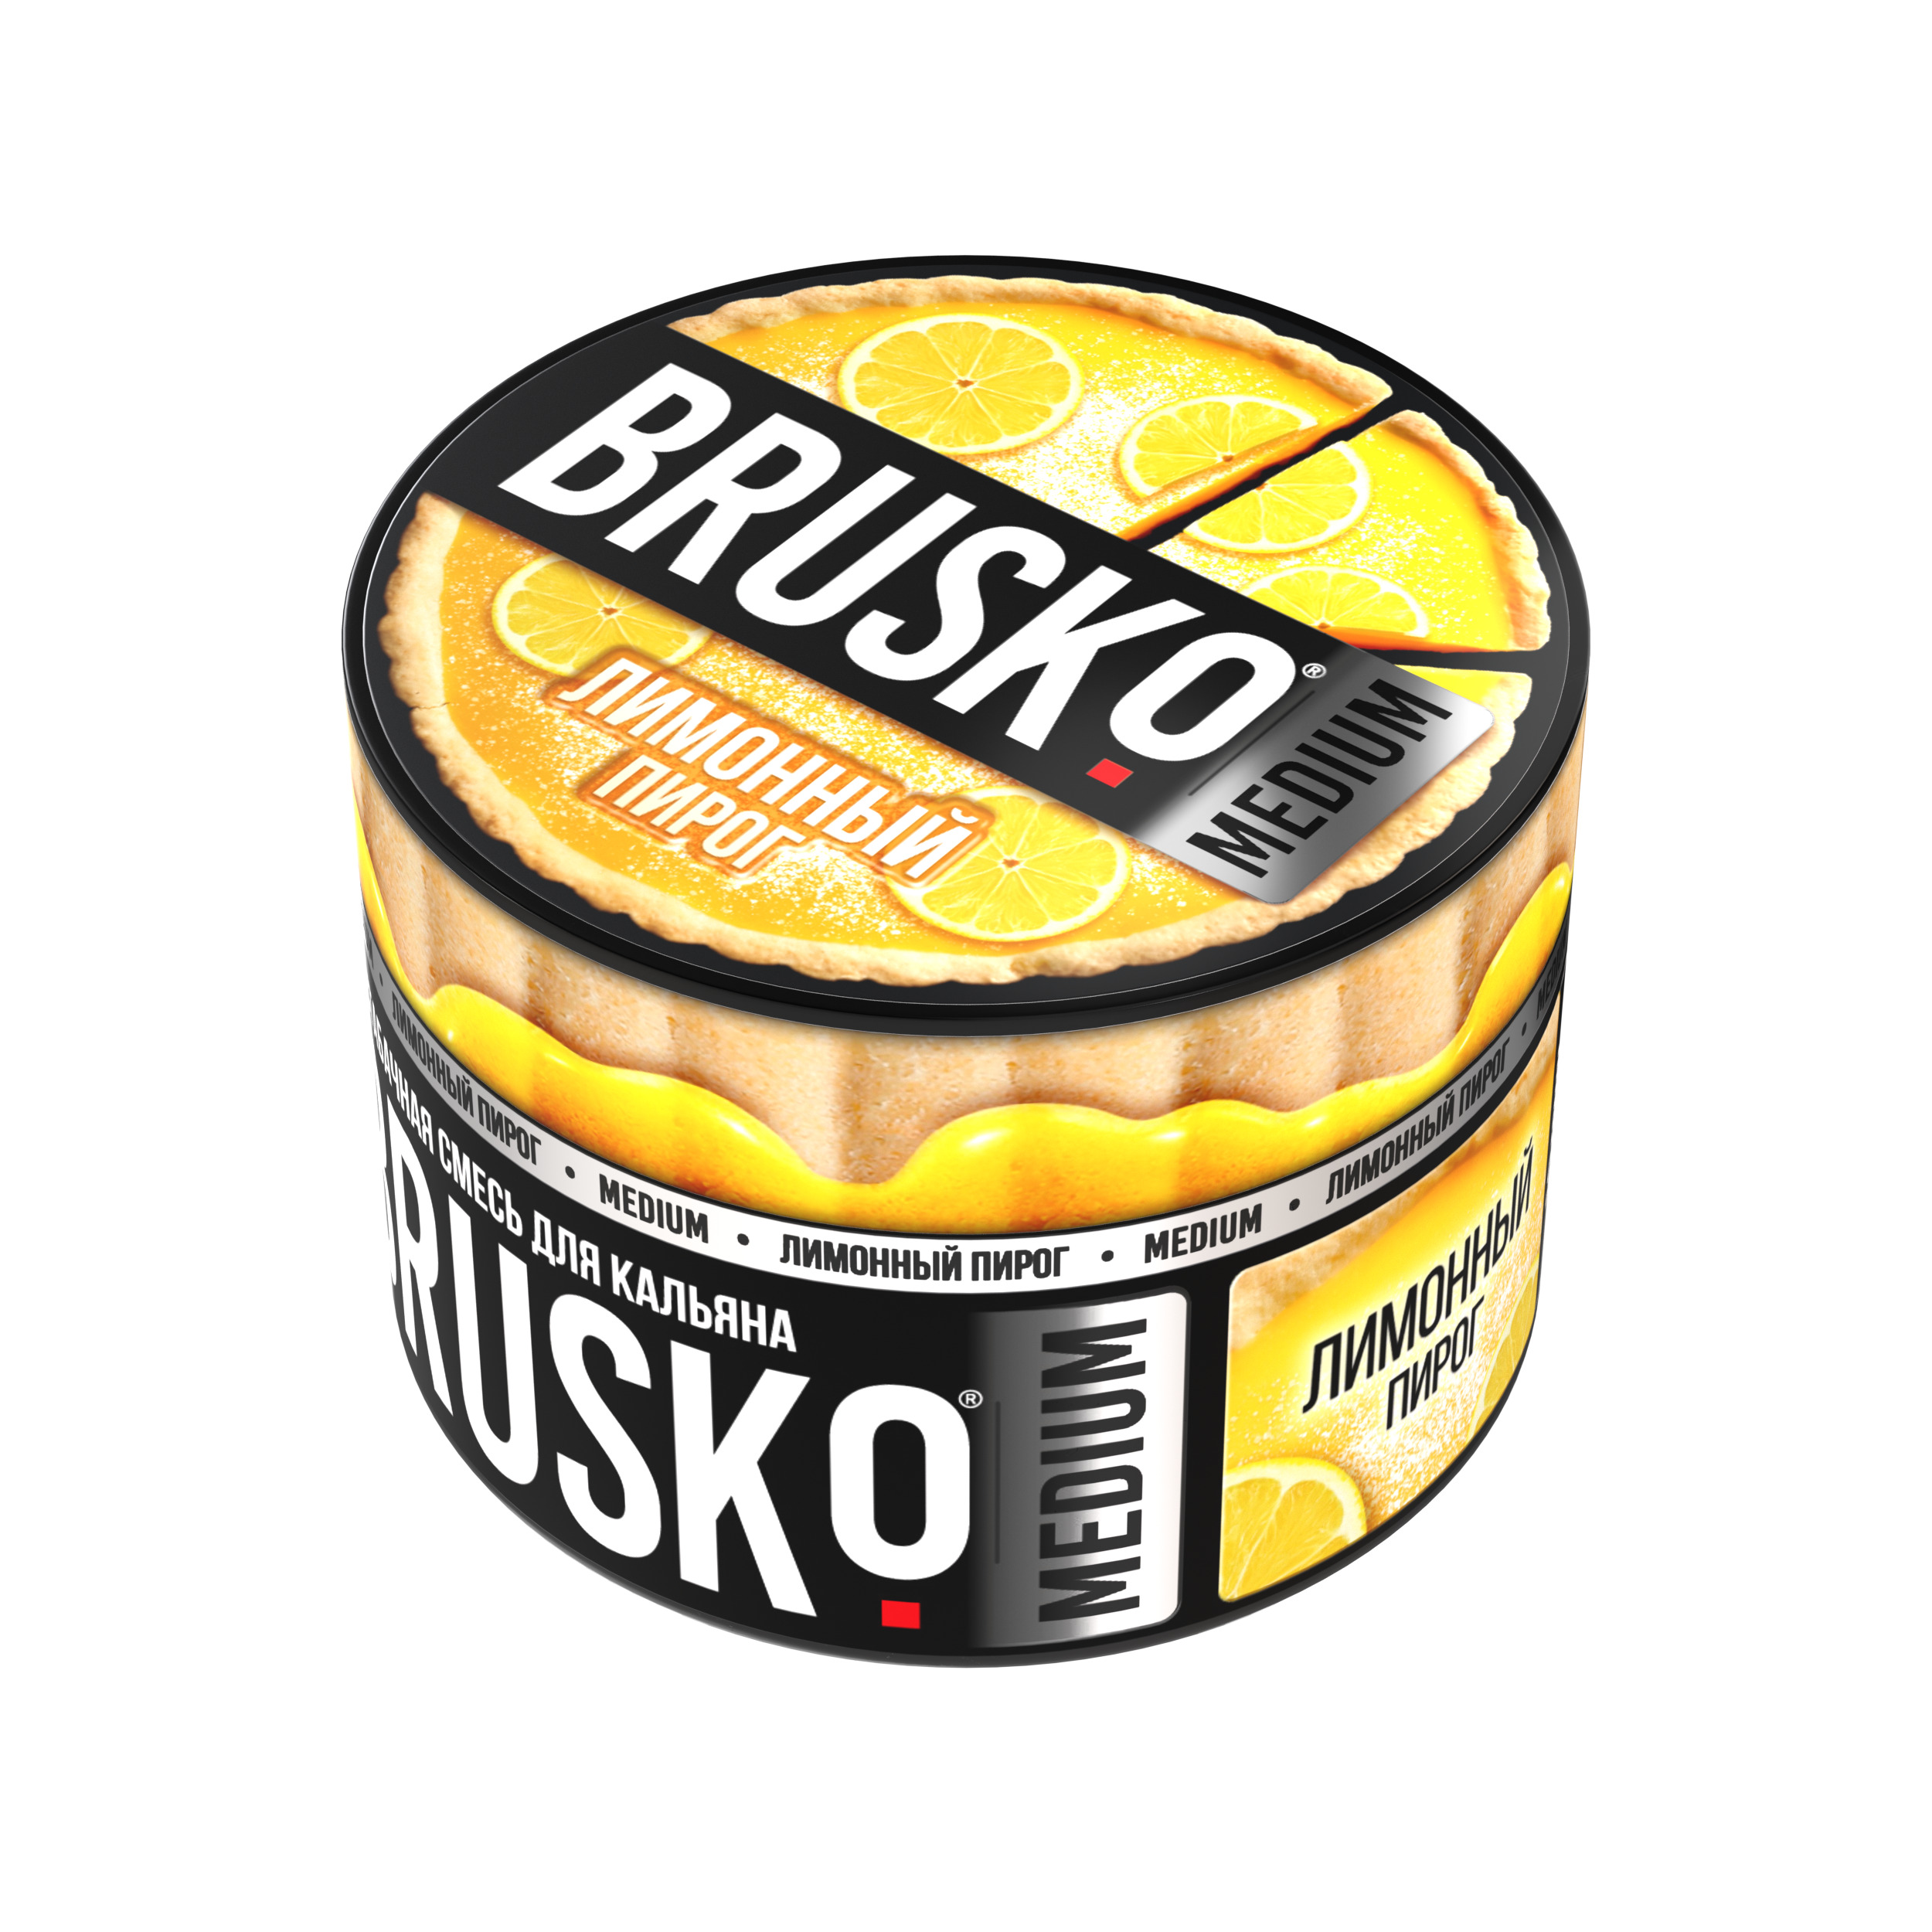 Бестабачная смесь для кальяна BRUSKO, 50 г, Лимонный пирог, Medium (М)